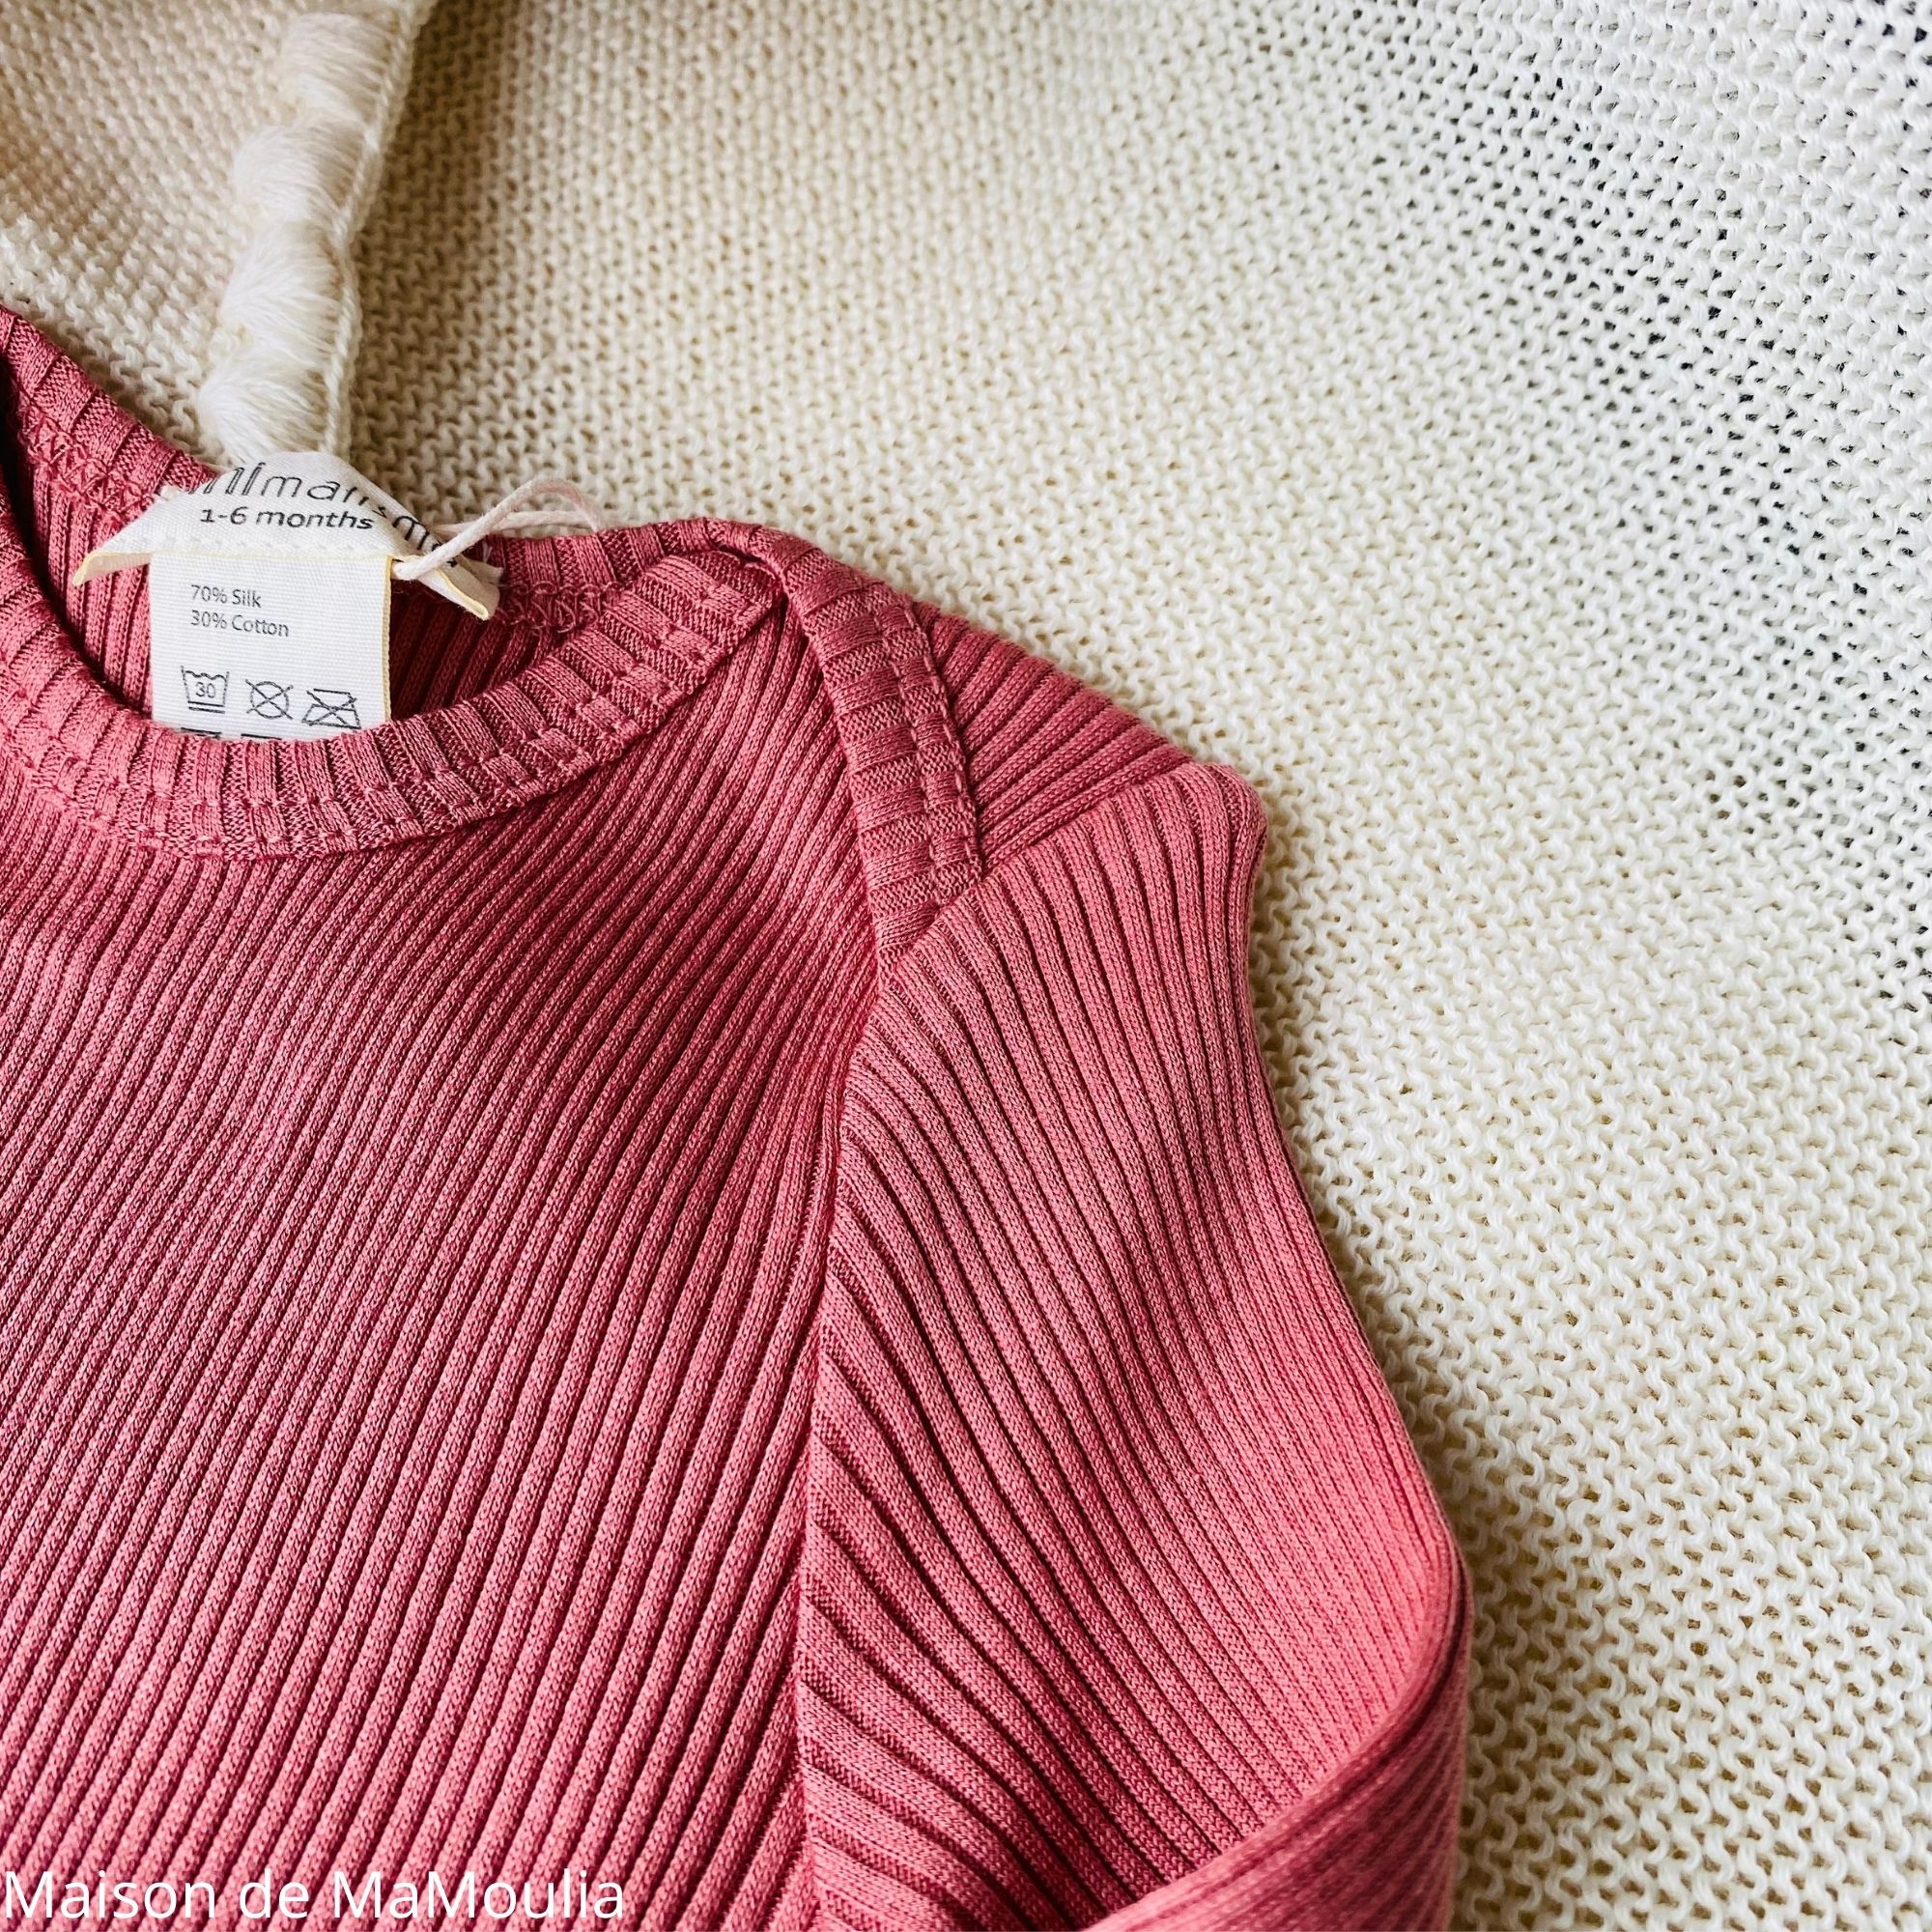 belfast-tshirt-bebe-enfant-soie-coton-minimalisma-maison-de-mamoulia-antique- red-rose